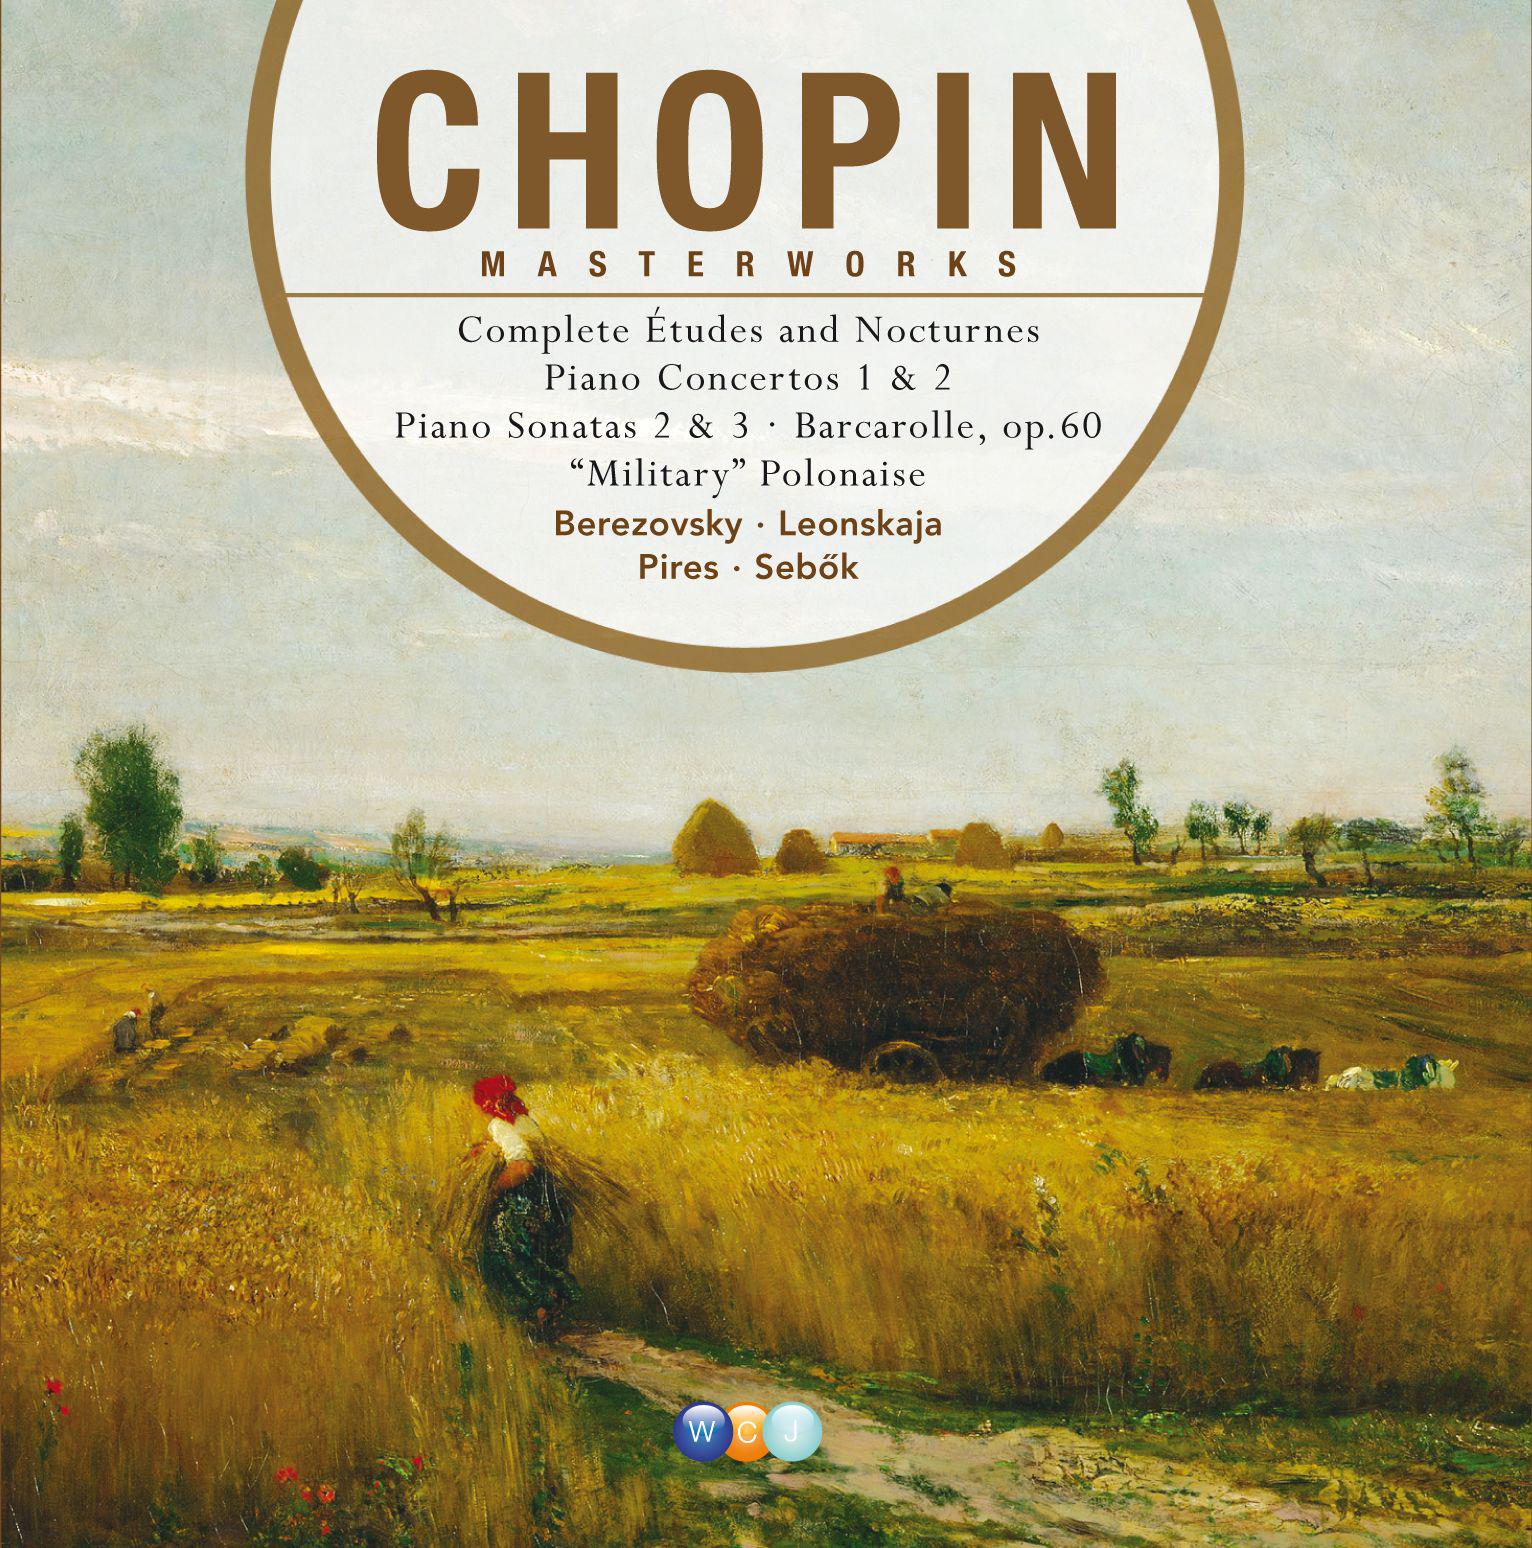 Chopin Masterworks Volume 1